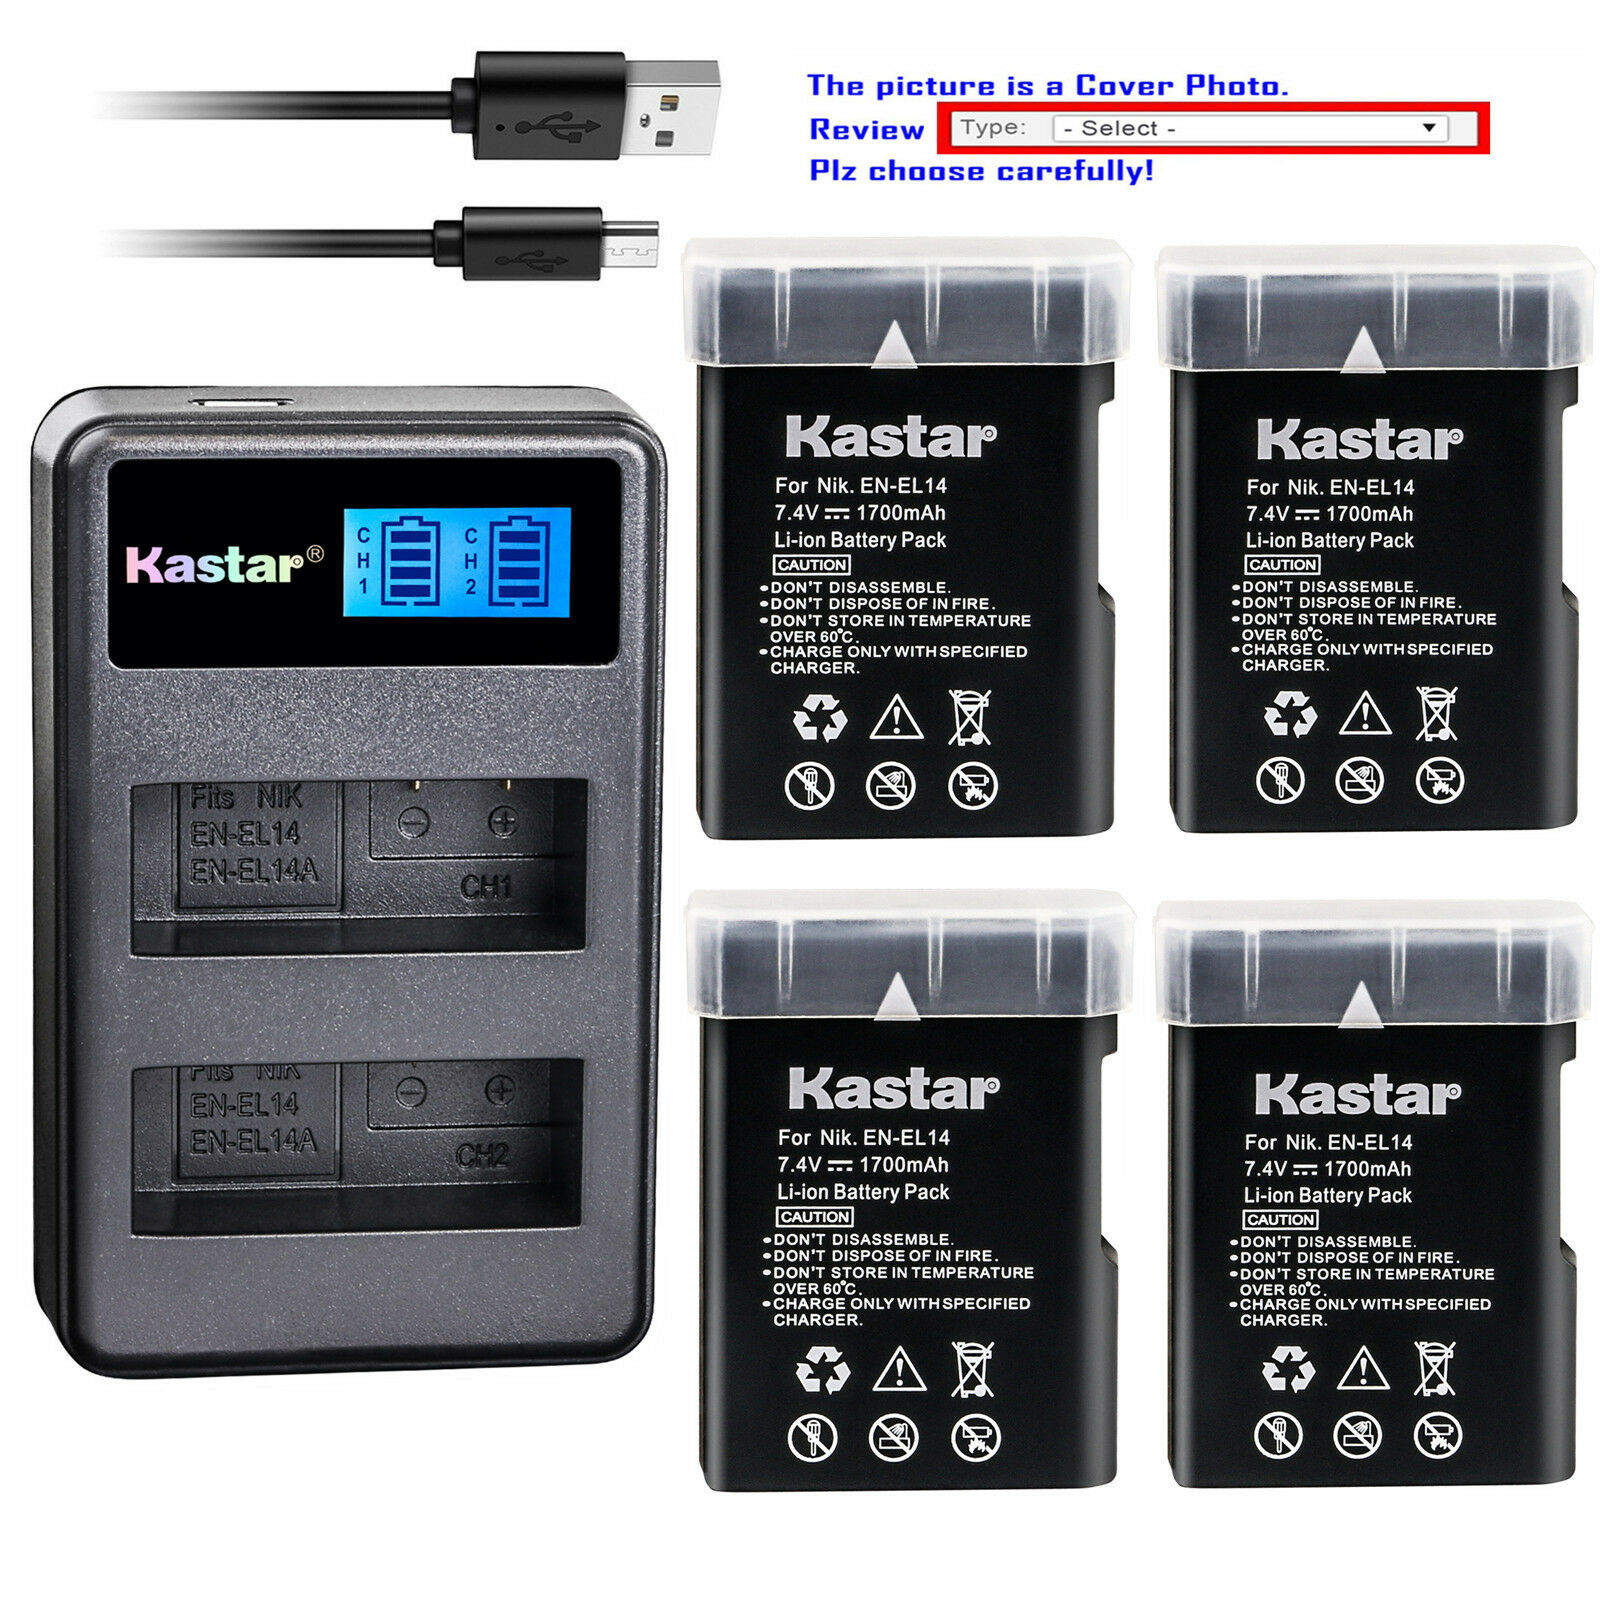 Kastar Battery Lcd2 Charger For Nikon D5100 D5200 D5300 D3100 D3200 D3300 P7000